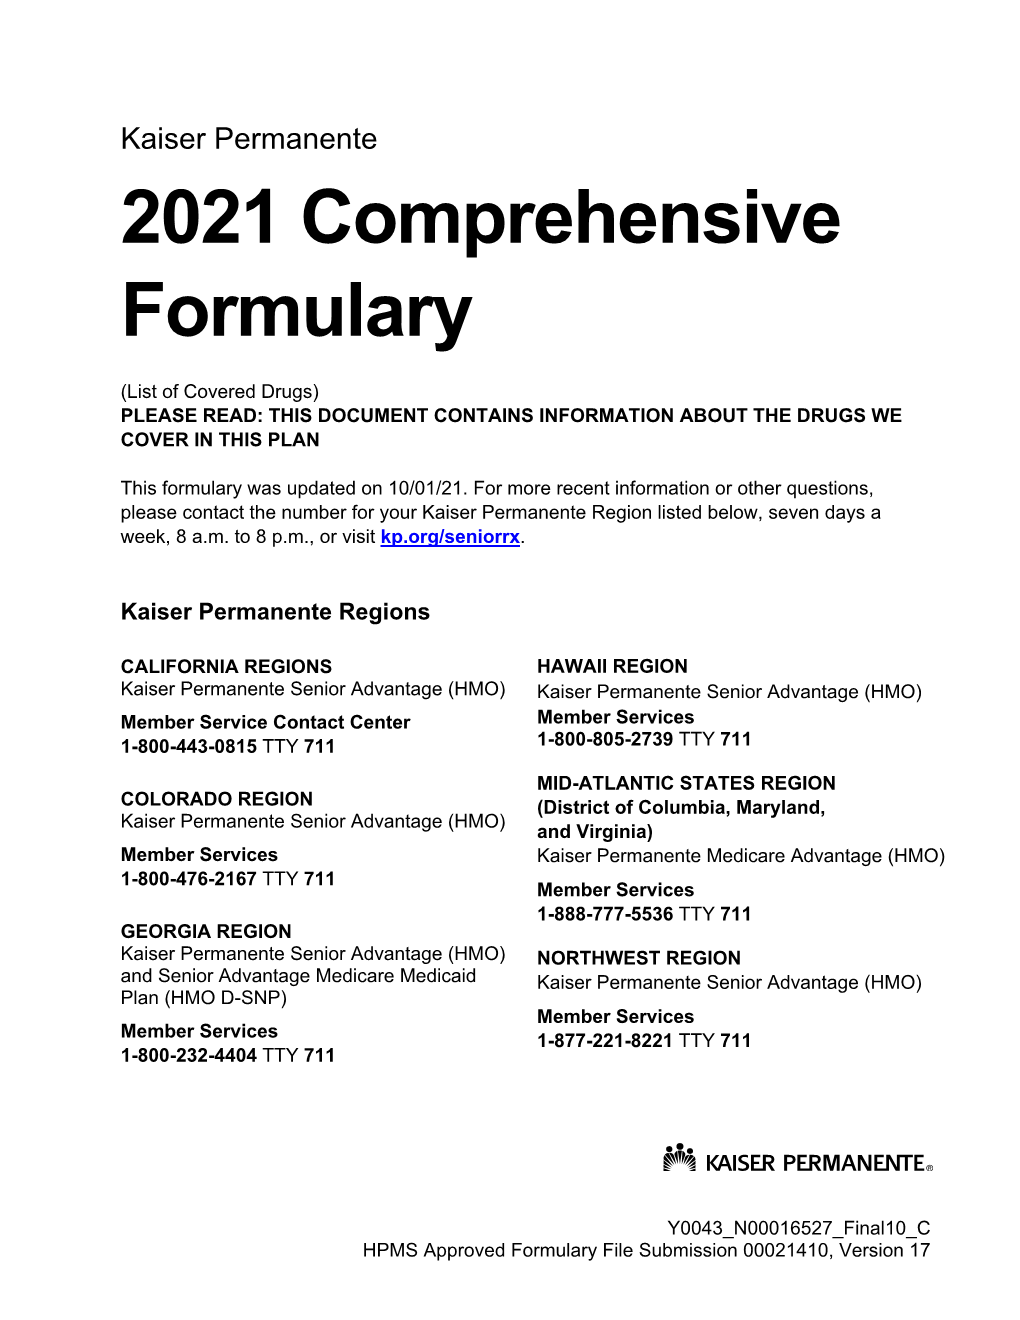 Kaiser Permanente Comprehensive Formulary